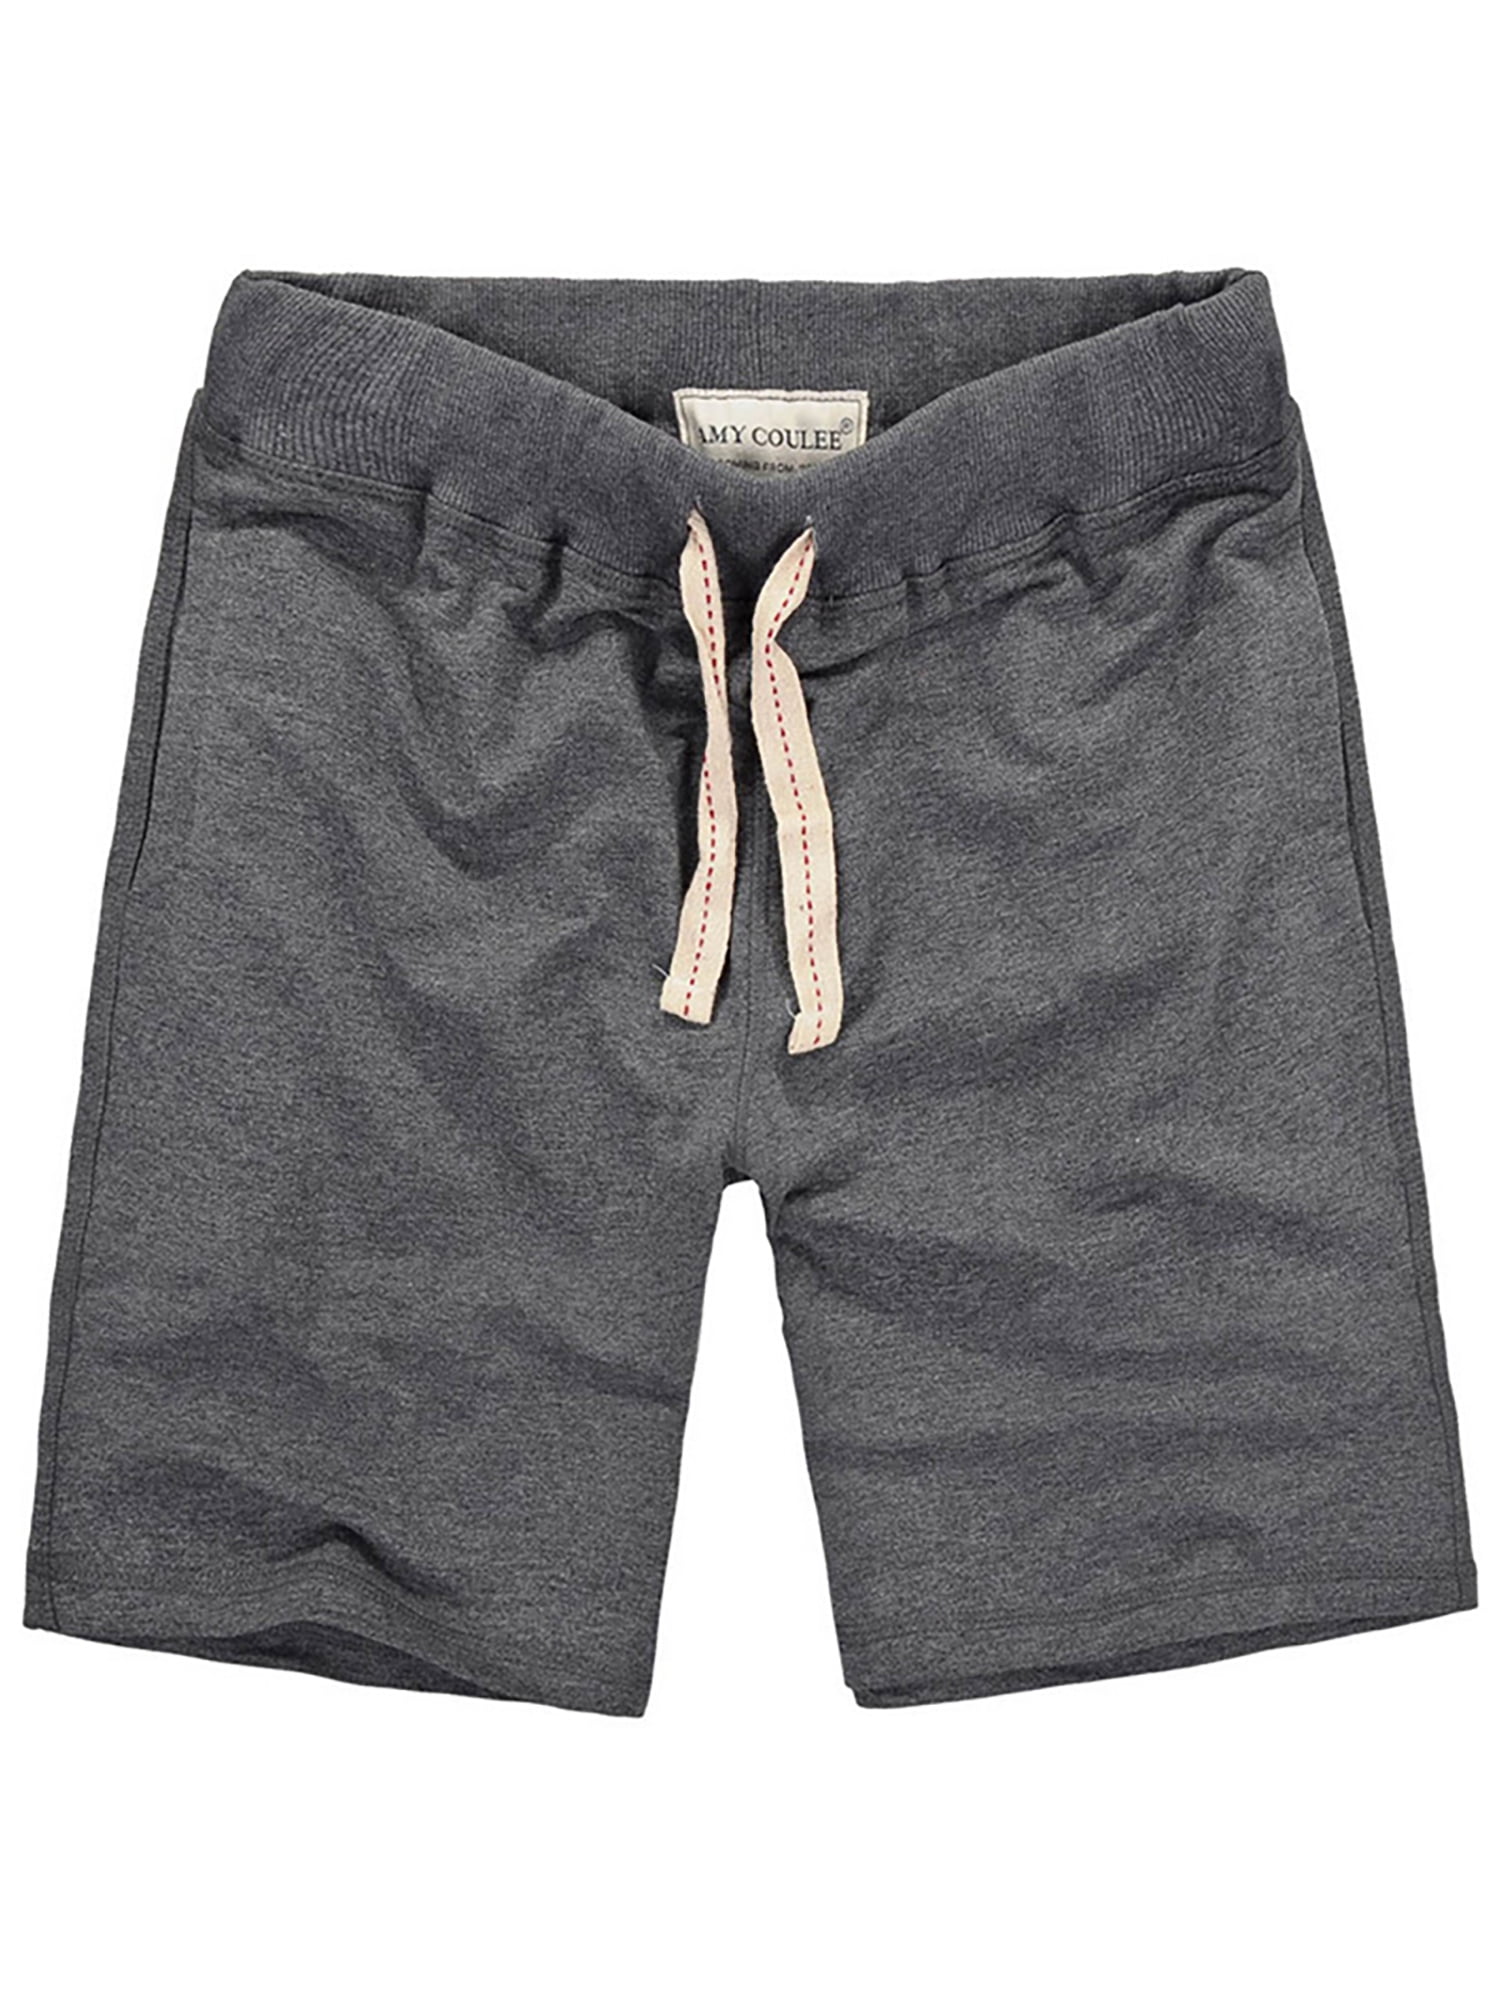 UKAP Mens Cotton Casual Elastic Waist Loose Shorts with Pockets